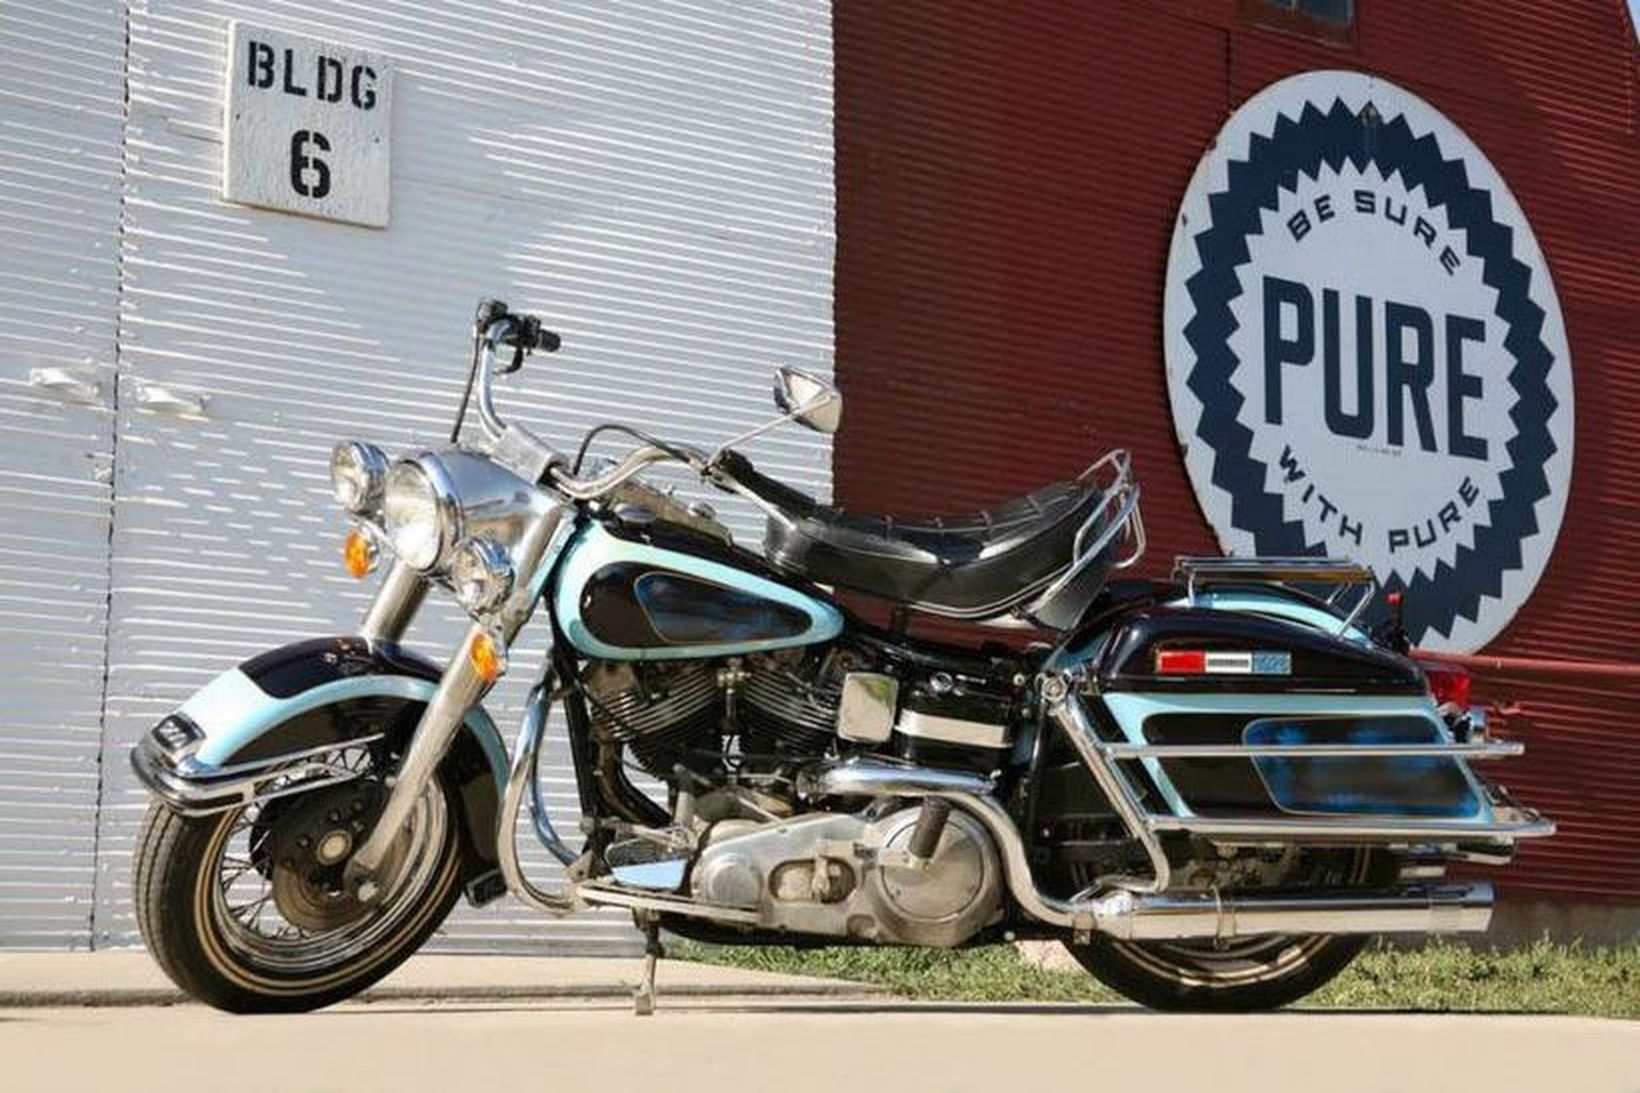 Harley-Davidson FLH 1200 Electra Glide mótorhjól Presley er metið tveggja …